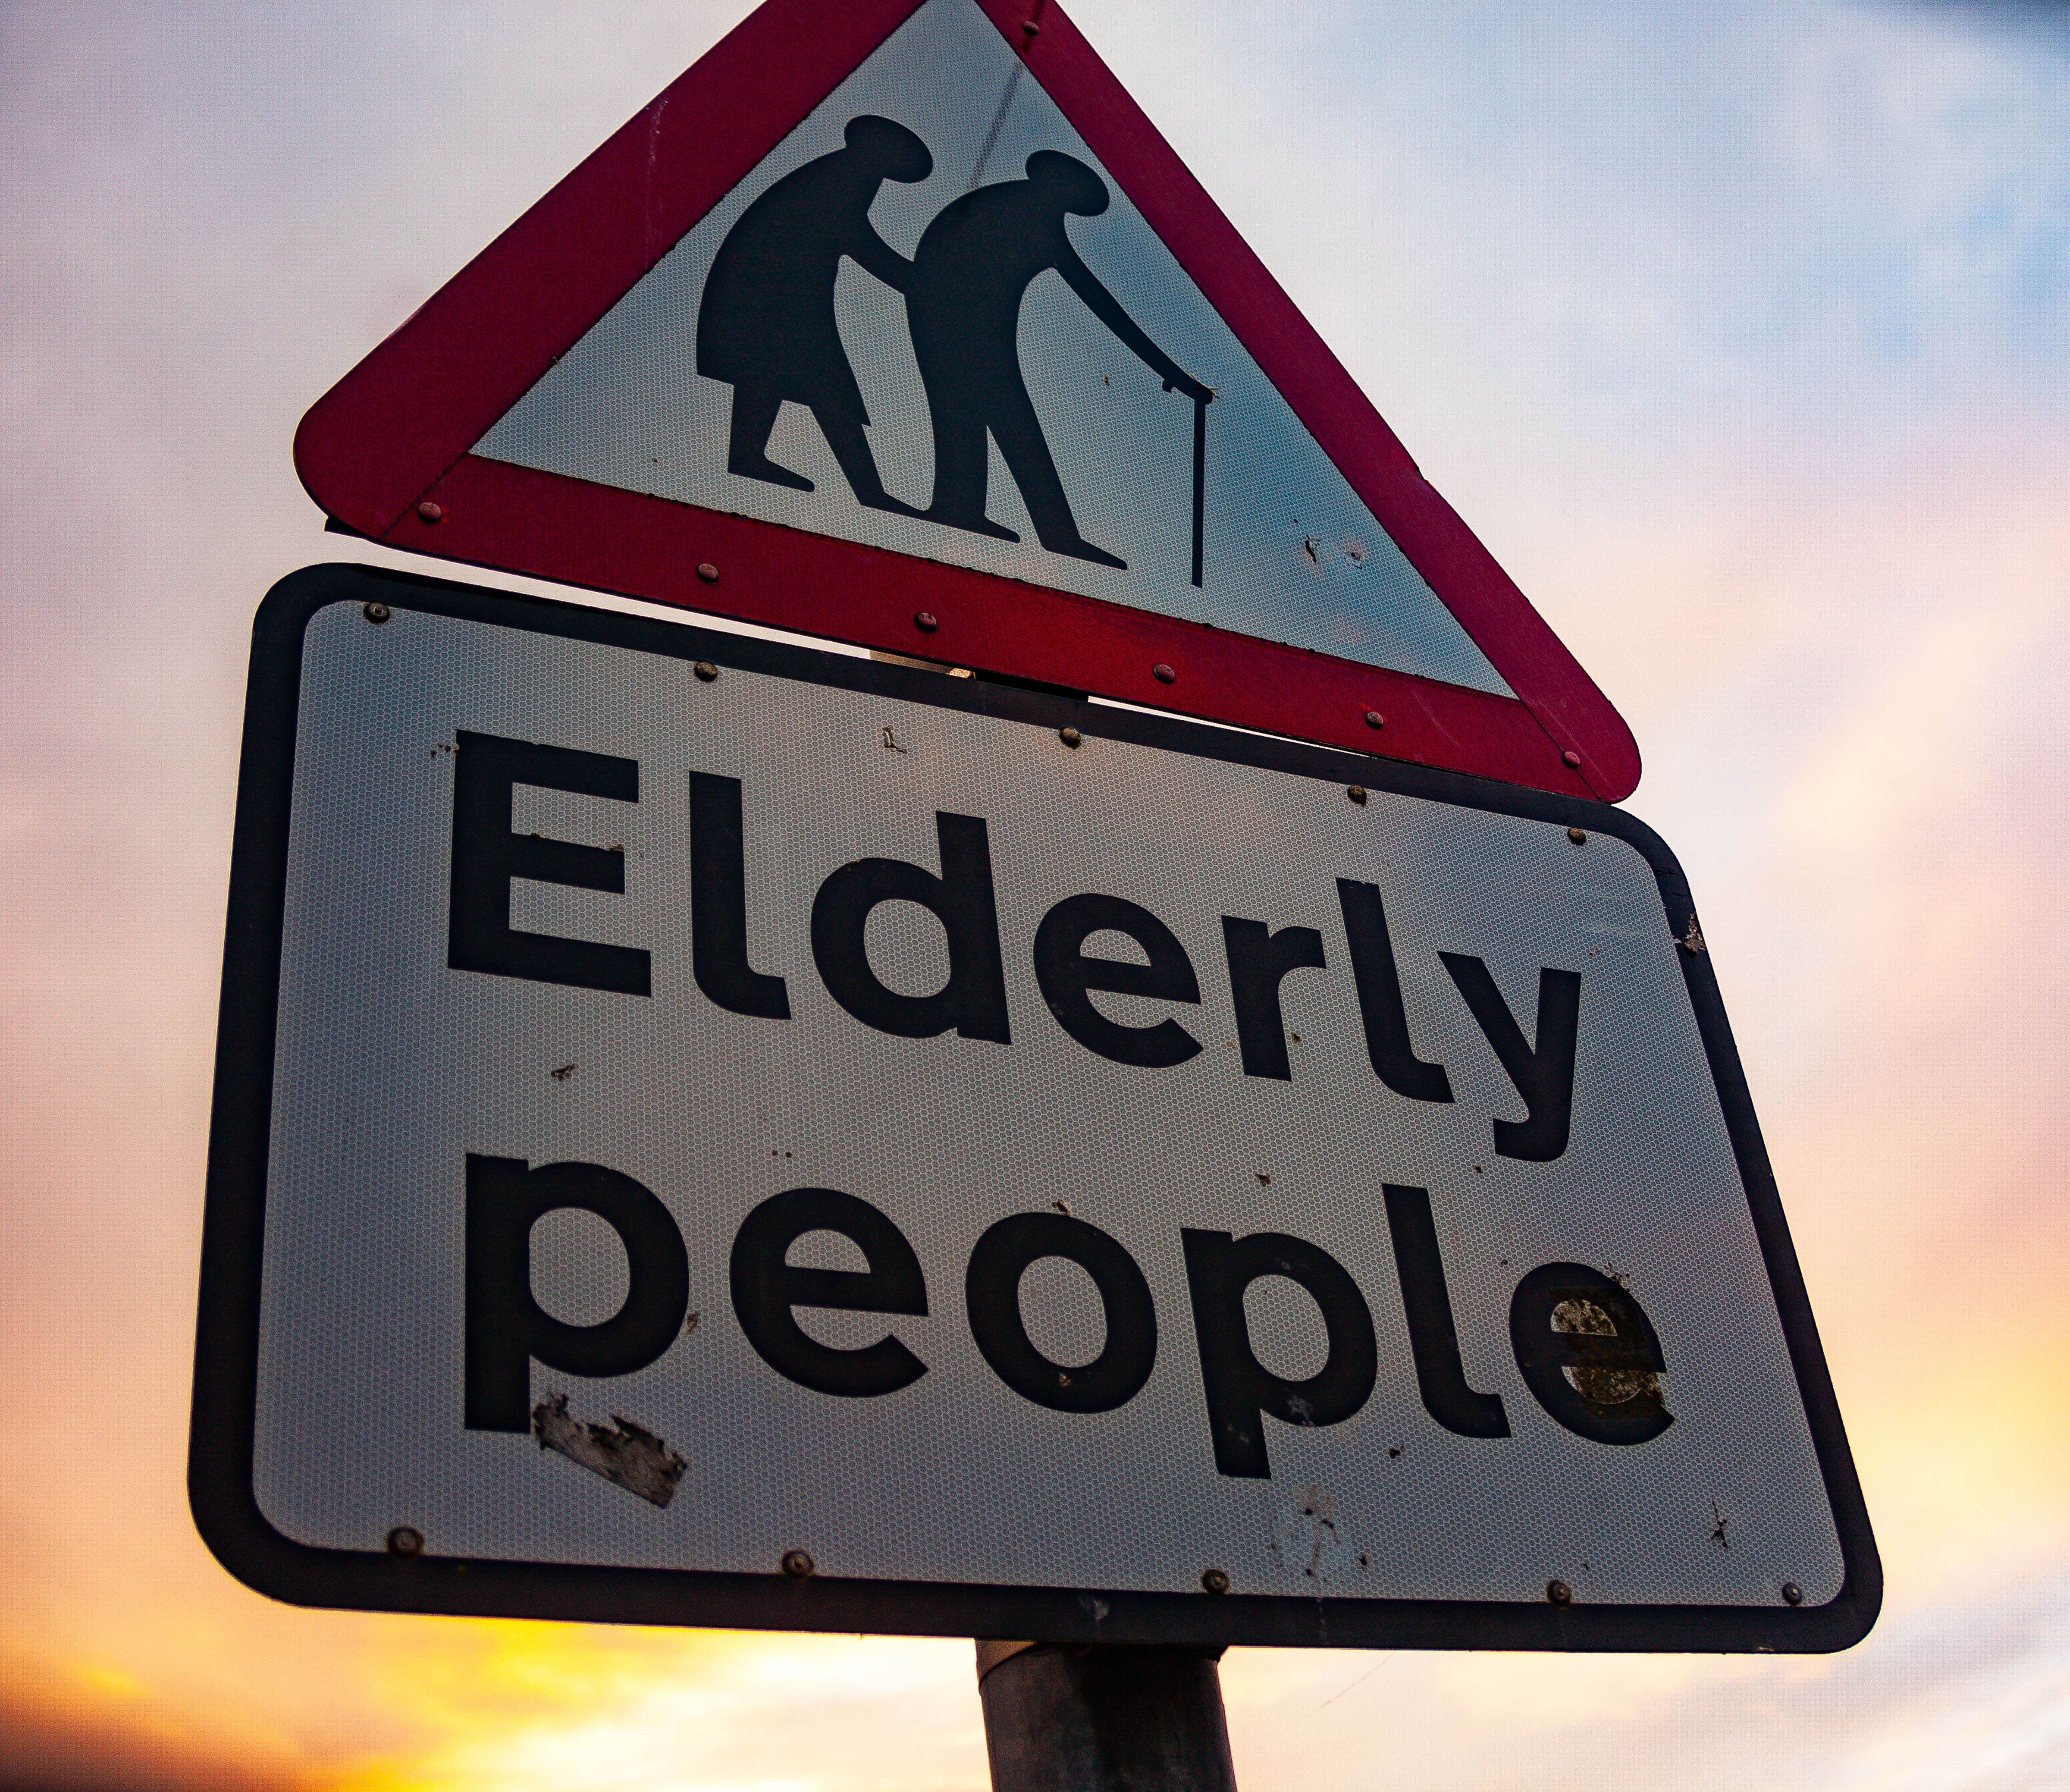 N Ireland, North Down Prov, Elderly People Sign, 2009, IMG 9974